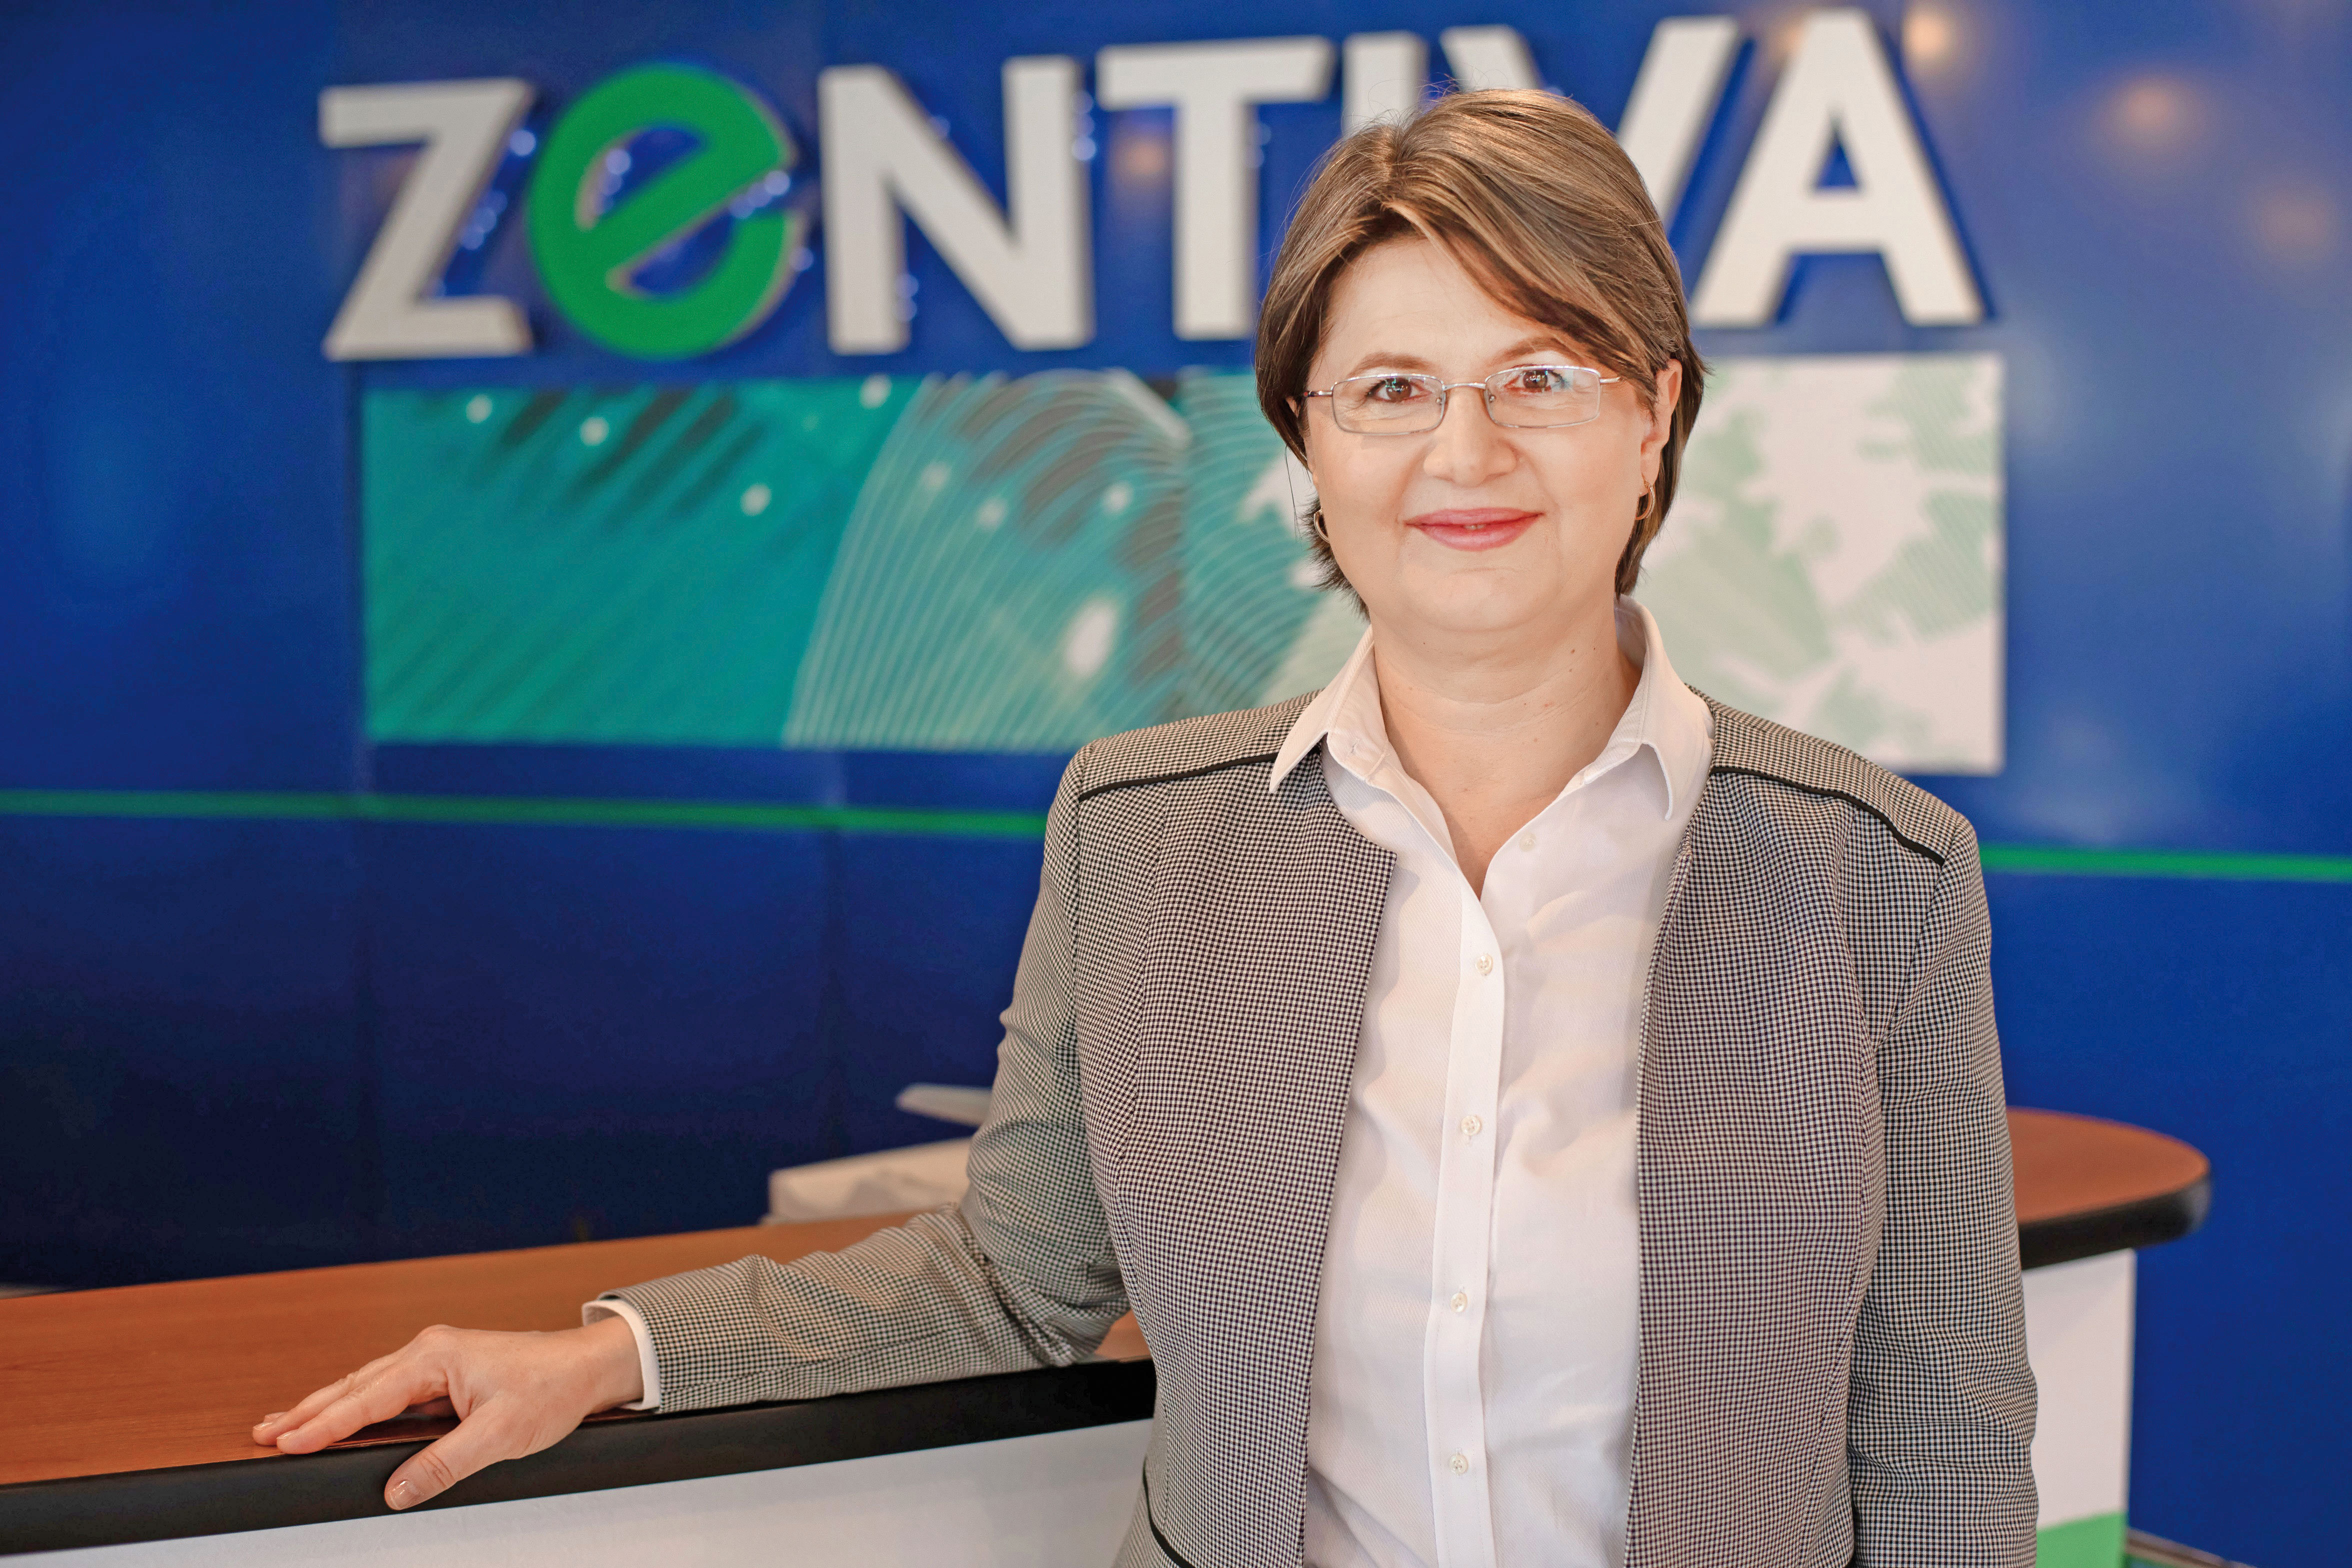 Simona Cocoş, şefa Zentiva, cel mai mare producător de medicamente din România, a avut un venit brut de 1 mil. lei în 2022